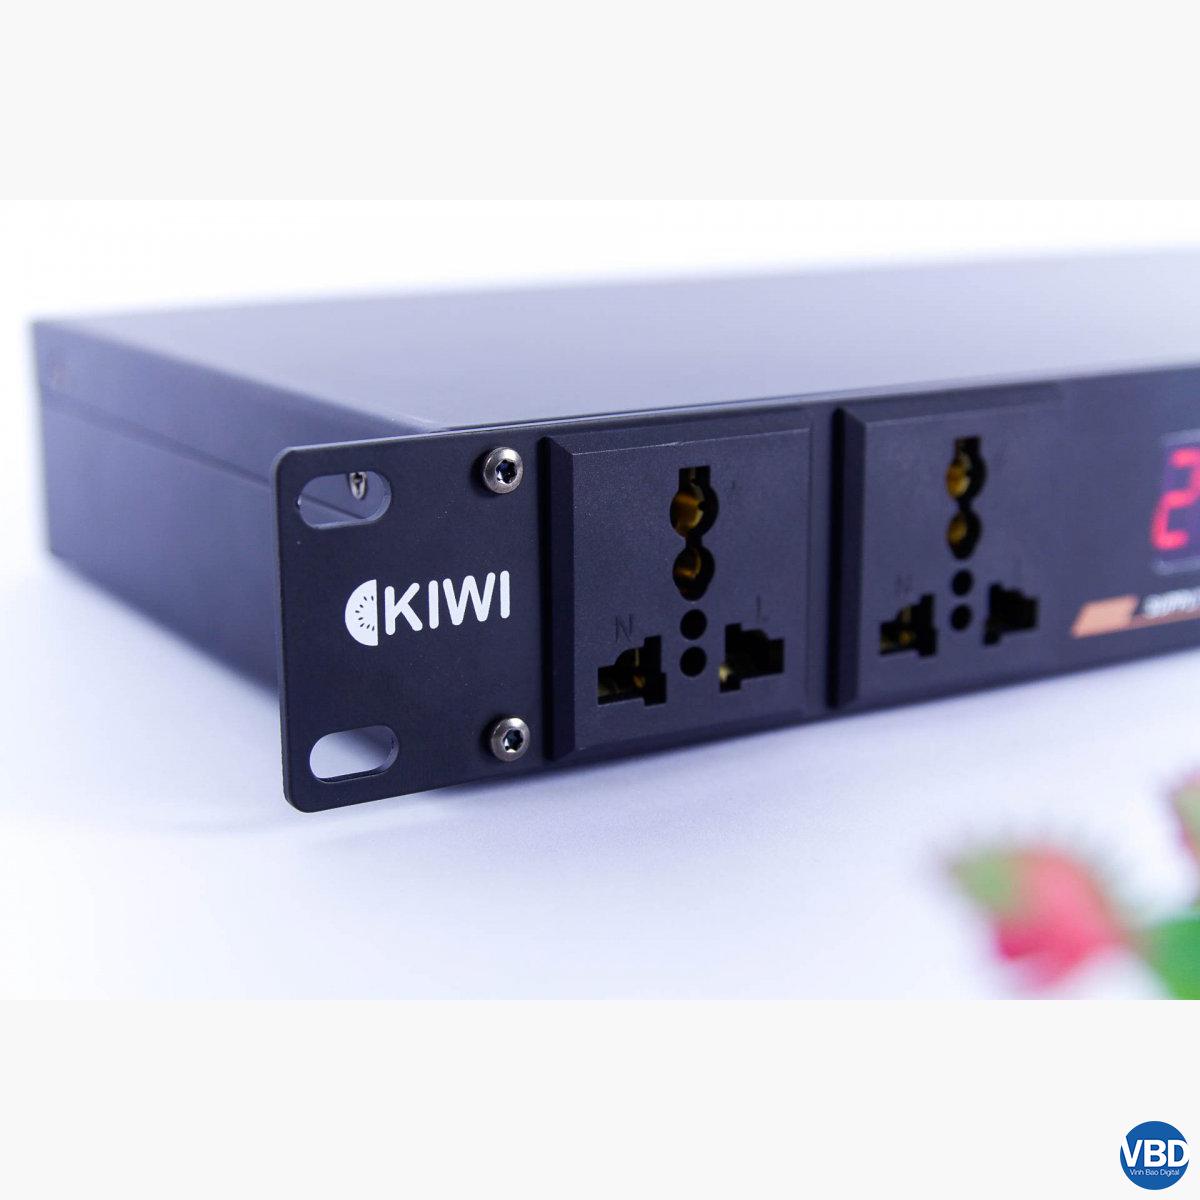 7Thiết bị quản lý nguồn điện tự động KIWI S803A